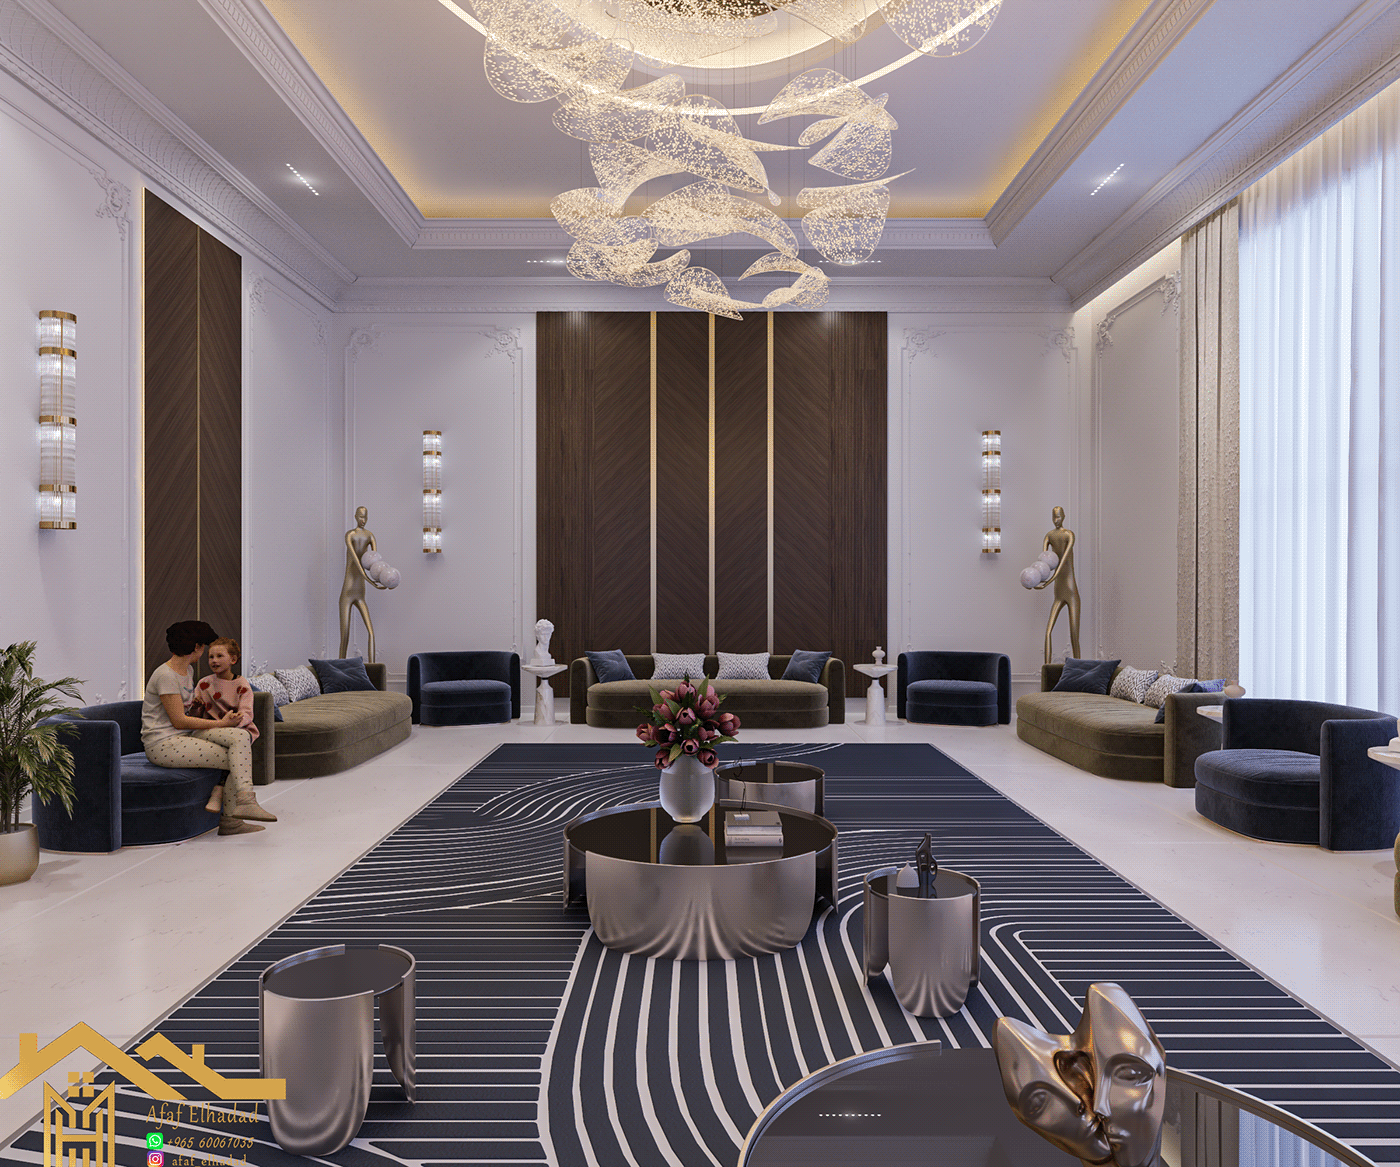 3dsmax interior design  modern architecture Render design majlis design living room 3dsky models vrayrender